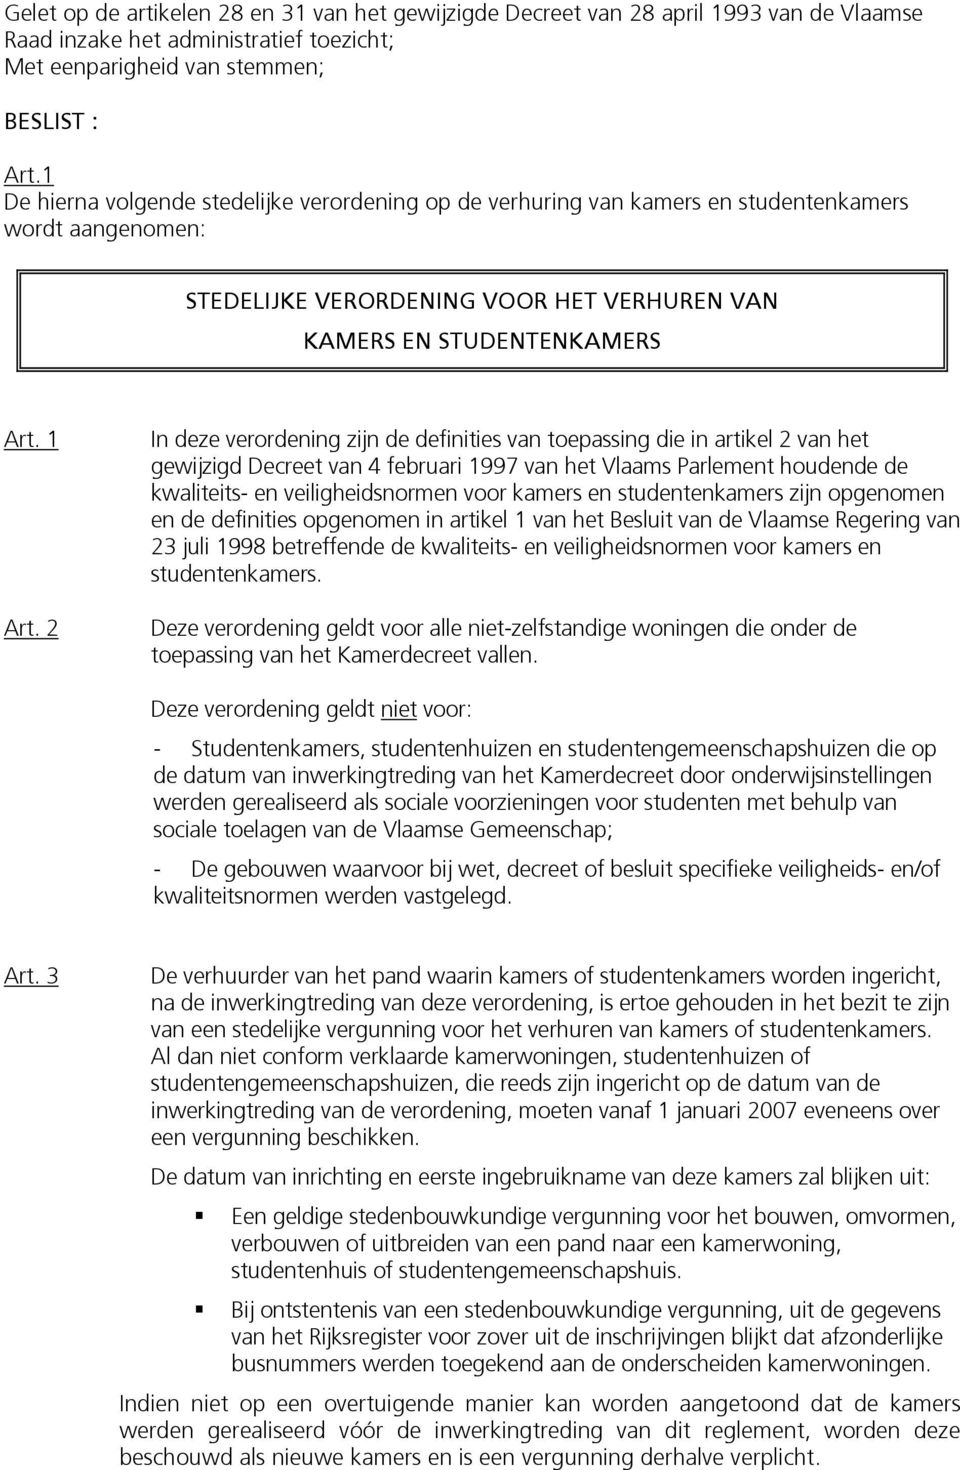 2 In deze verordening zijn de definities van toepassing die in artikel 2 van het gewijzigd Decreet van 4 februari 1997 van het Vlaams Parlement houdende de kwaliteits- en veiligheidsnormen voor